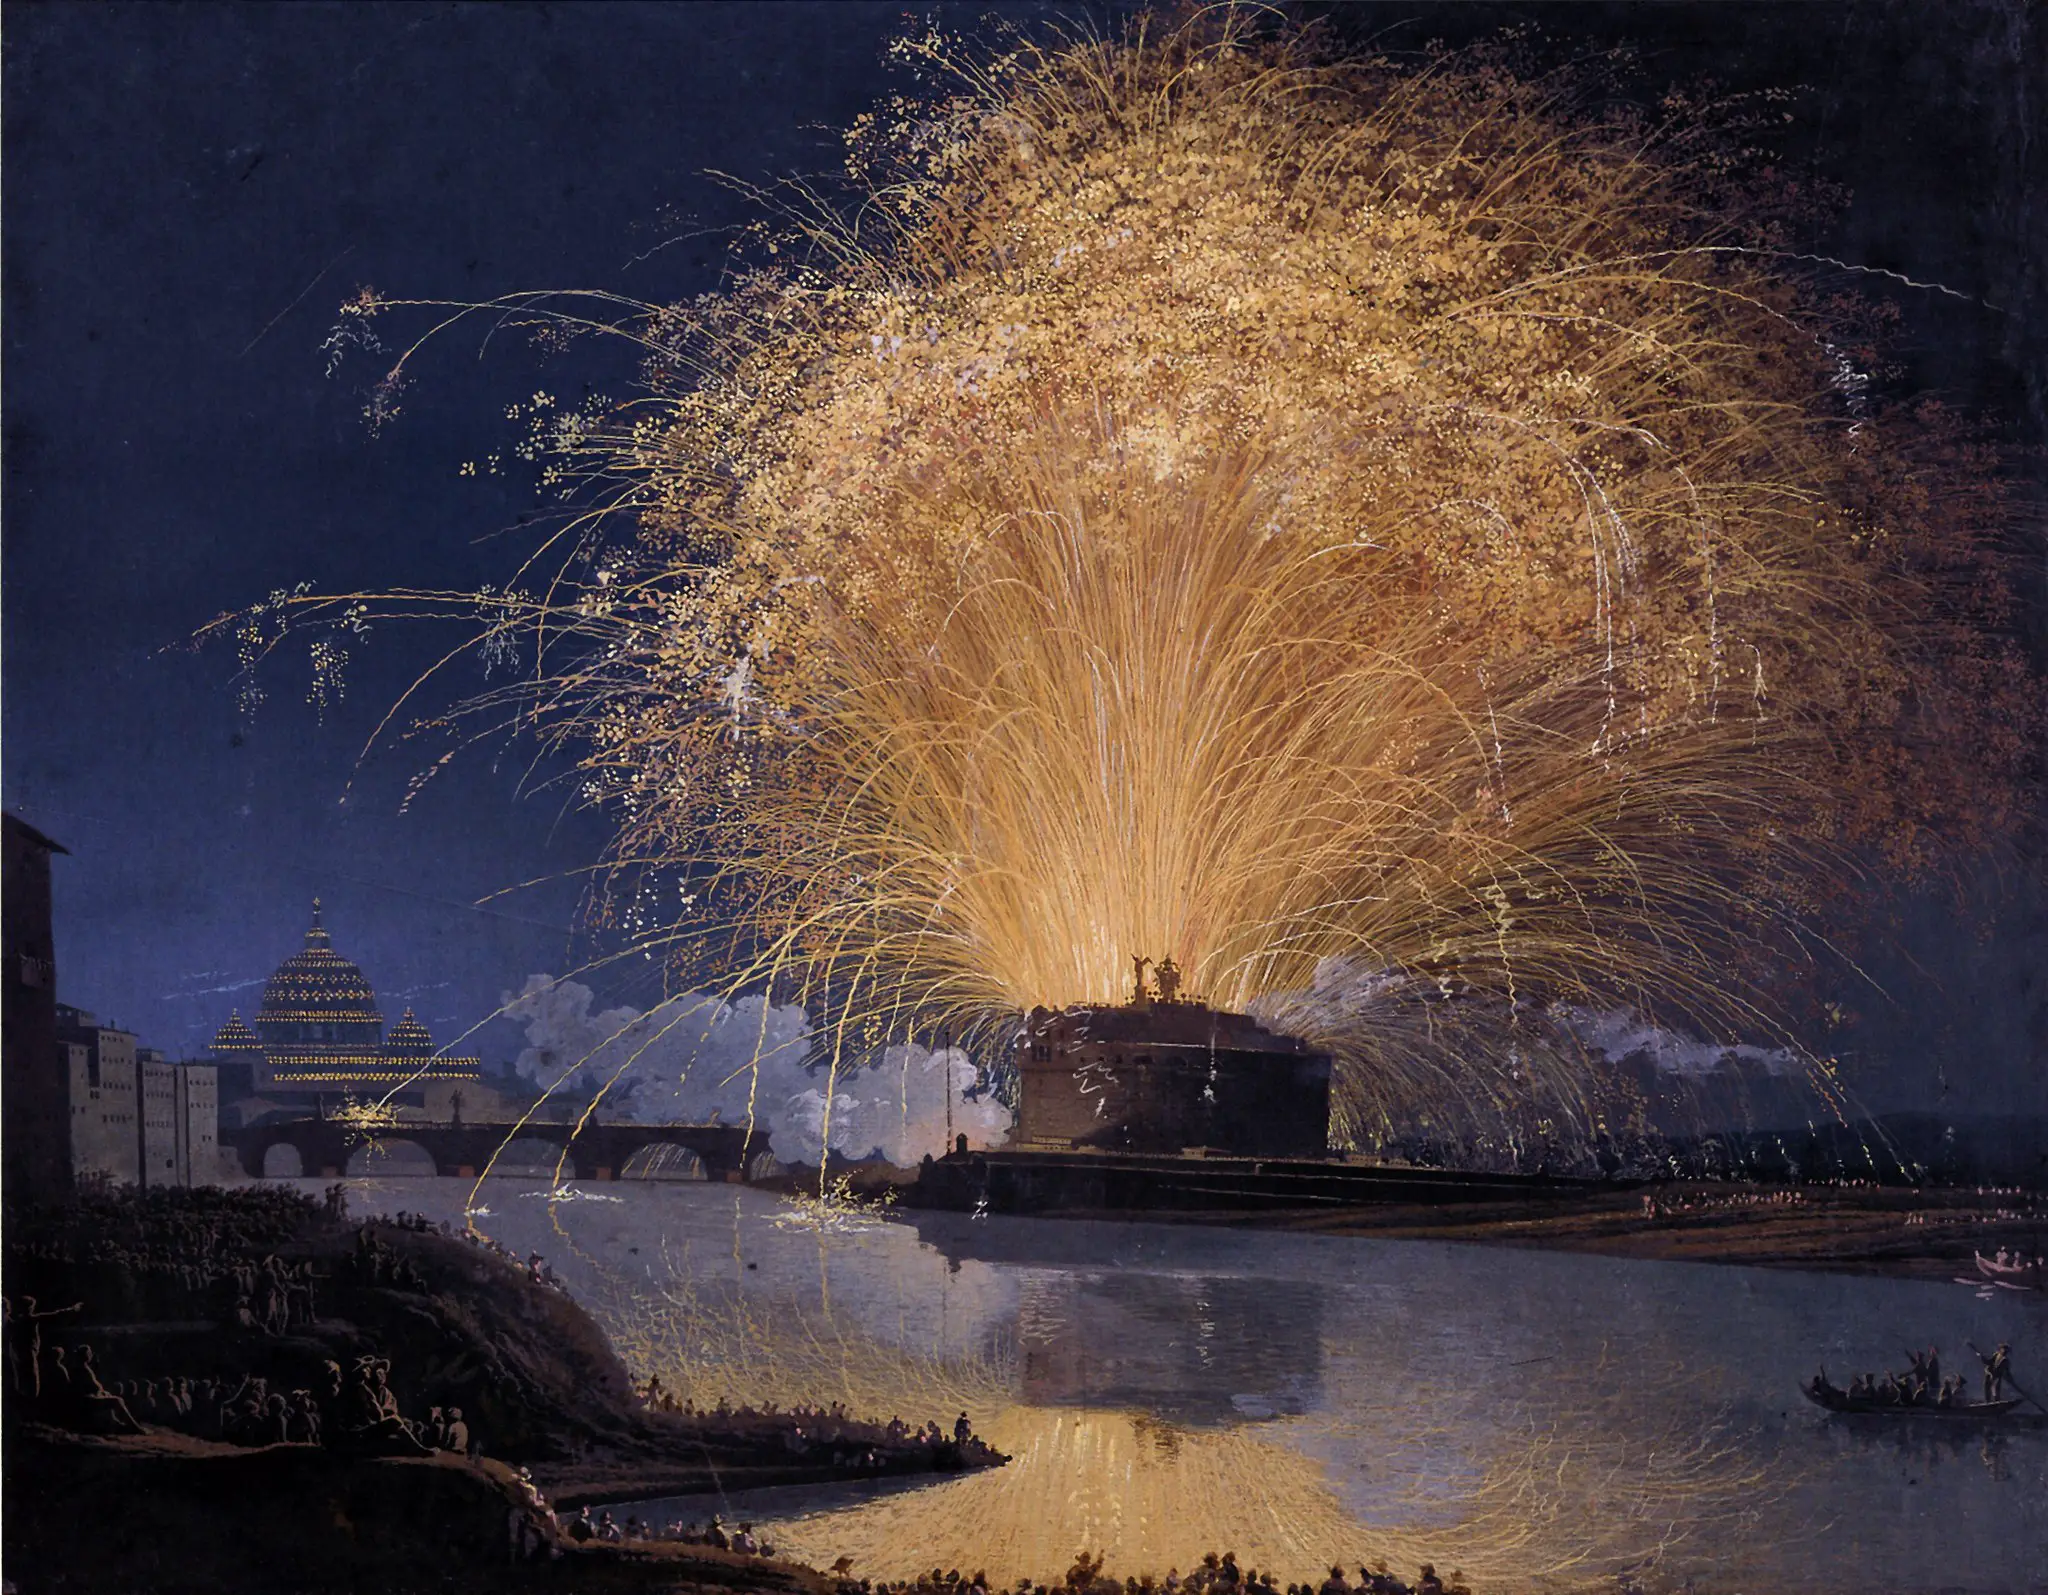 Fuegos artificiales: Su historia comienza hace casi 1.500 años en la Antigua China -Revista Interesante